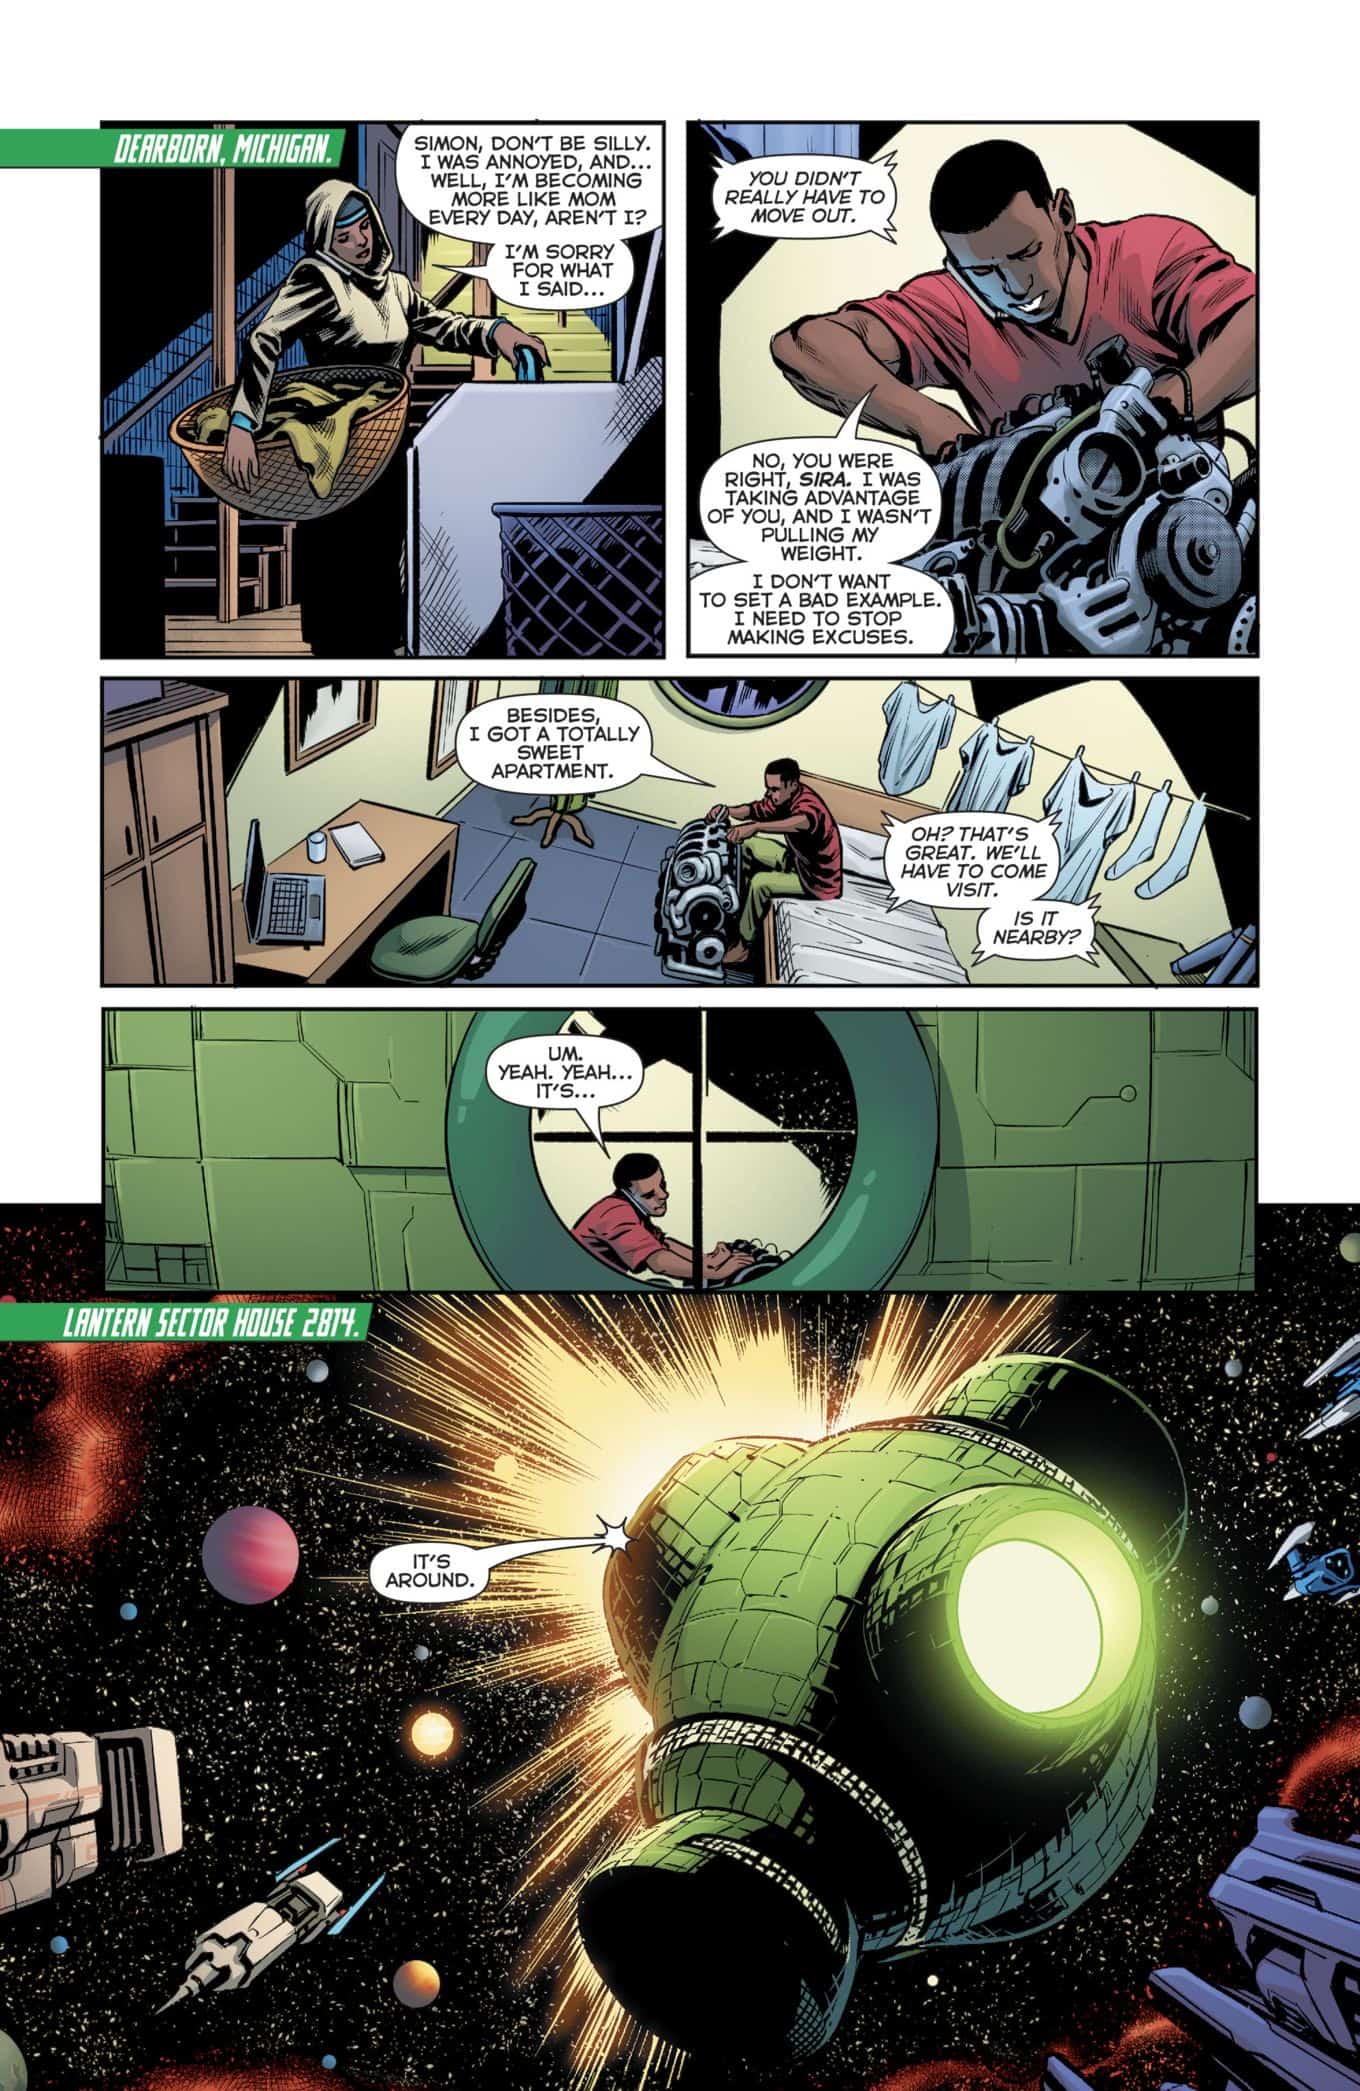 Green-Lanterns-34-DC-Comics-Rebirth-spoilers-3.jpg